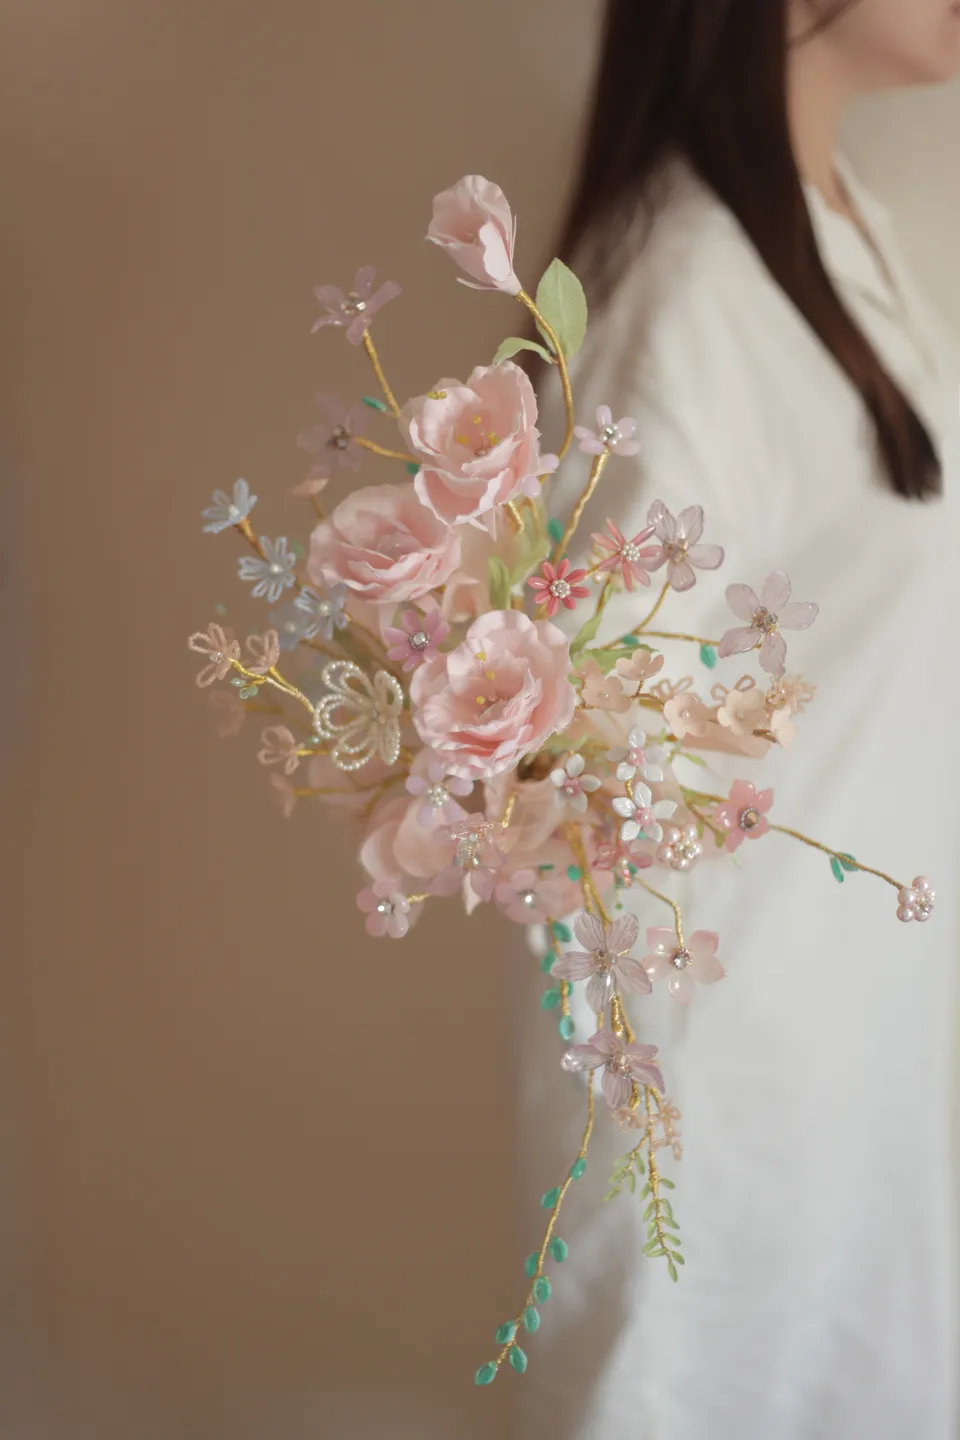 洋桔梗流線型珠寶捧花 手工花束prairie Gentian Bouquet